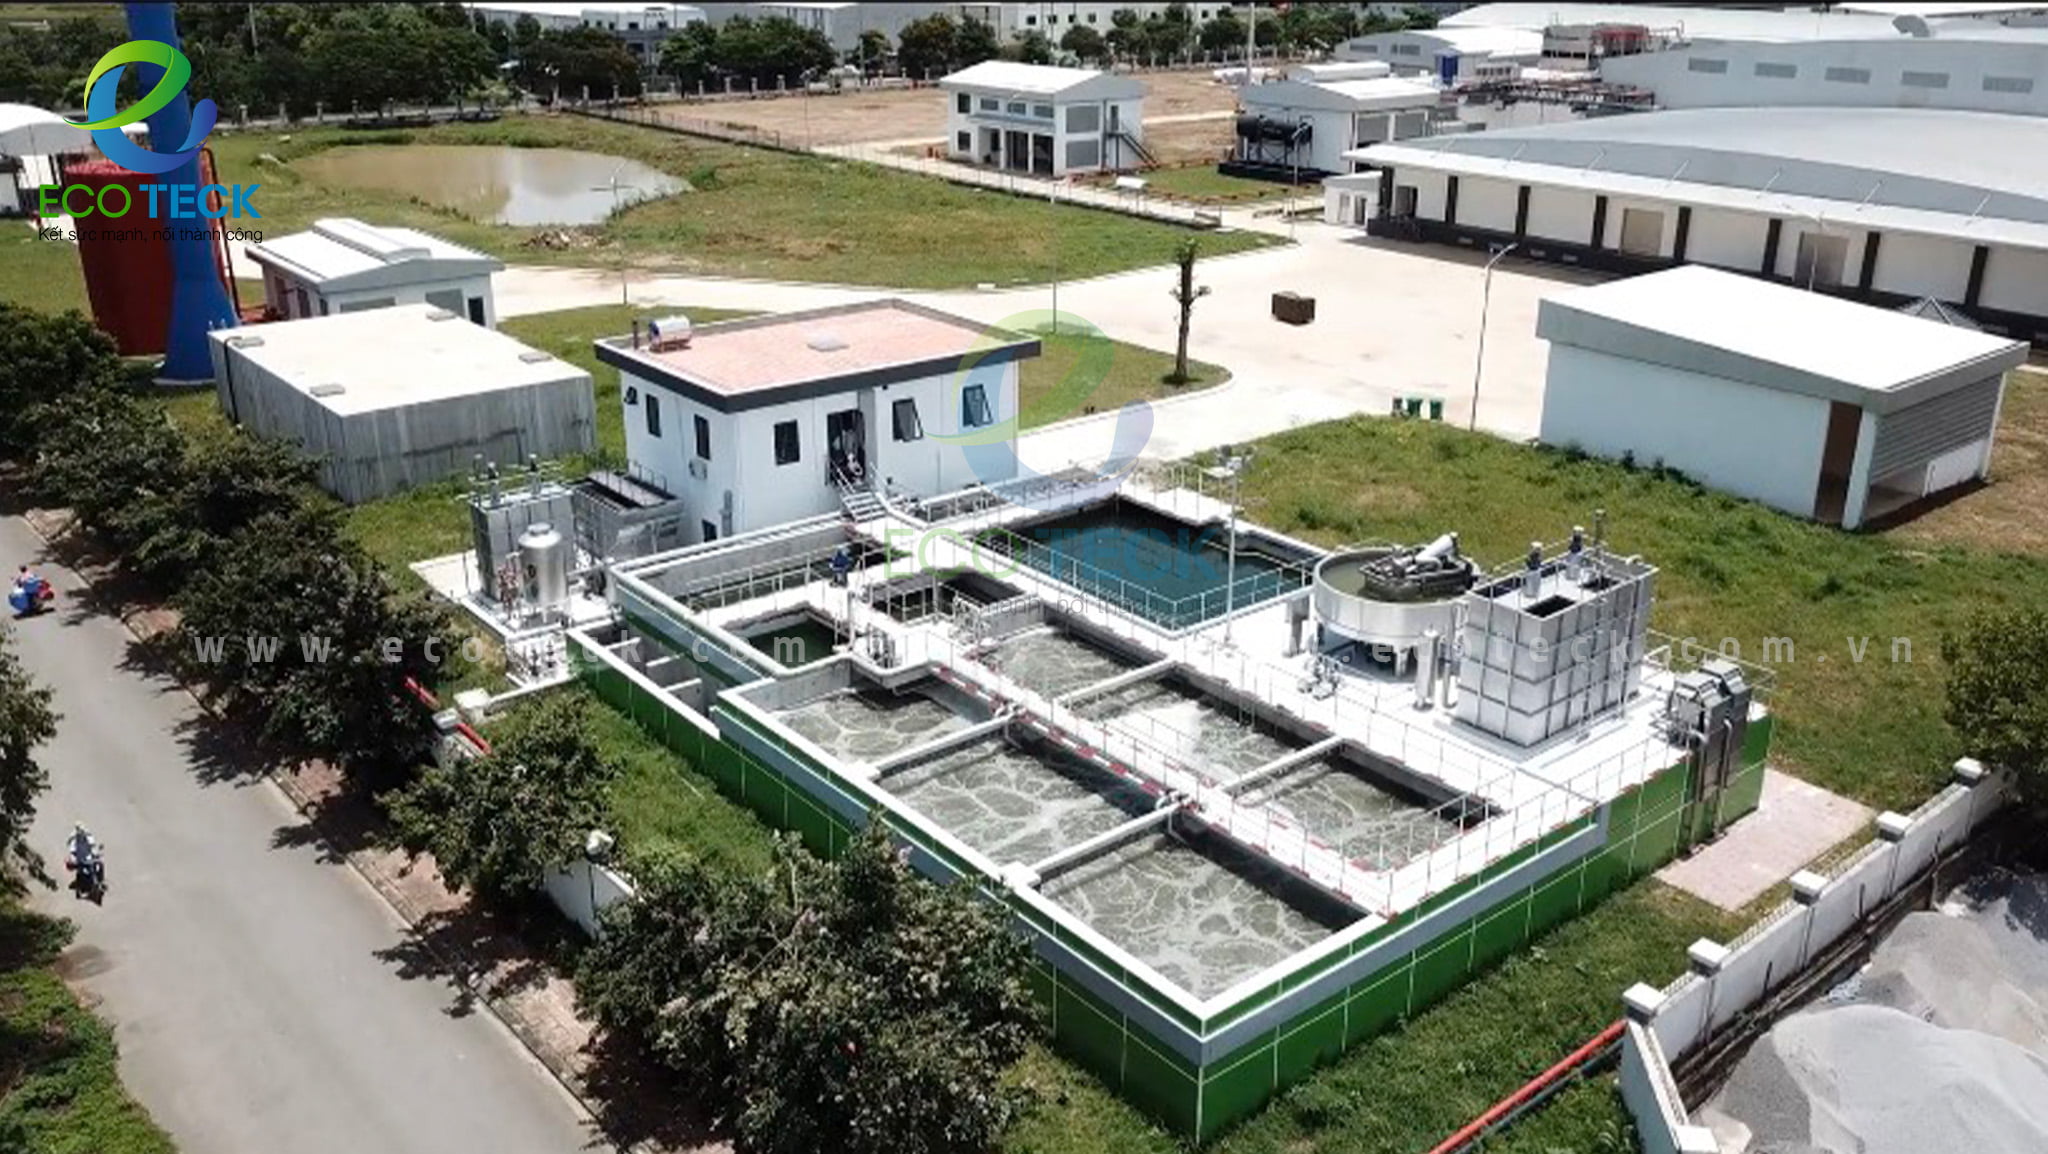 Trạm xử lý nước thải nhà máy chế biến và pha lóc thịt heo CP Phú Nghĩa hoàn thiện trước đó được chủ đầu tư đánh giá rất cao về thẩm mỹ, chất lượng.